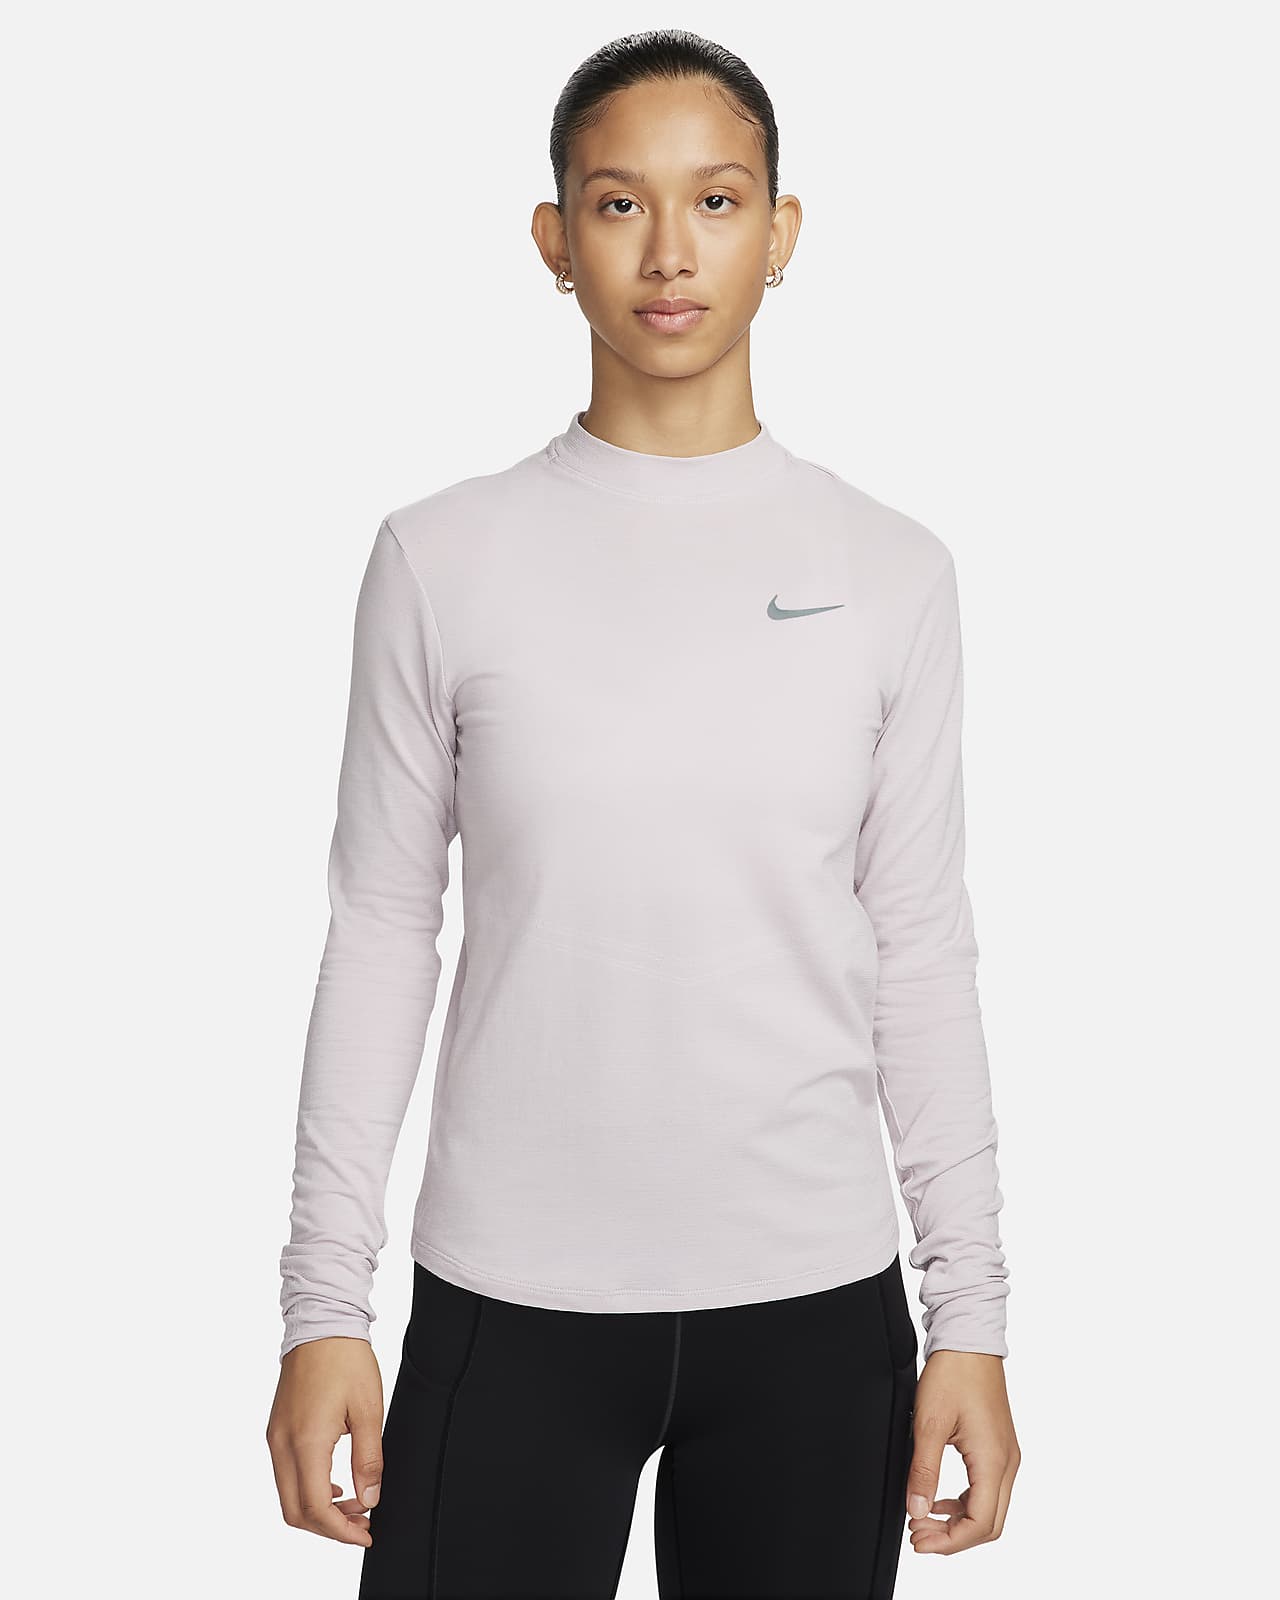 Damska koszulka z długim rękawem i półgolfem do biegania Dri-FIT Nike Swift